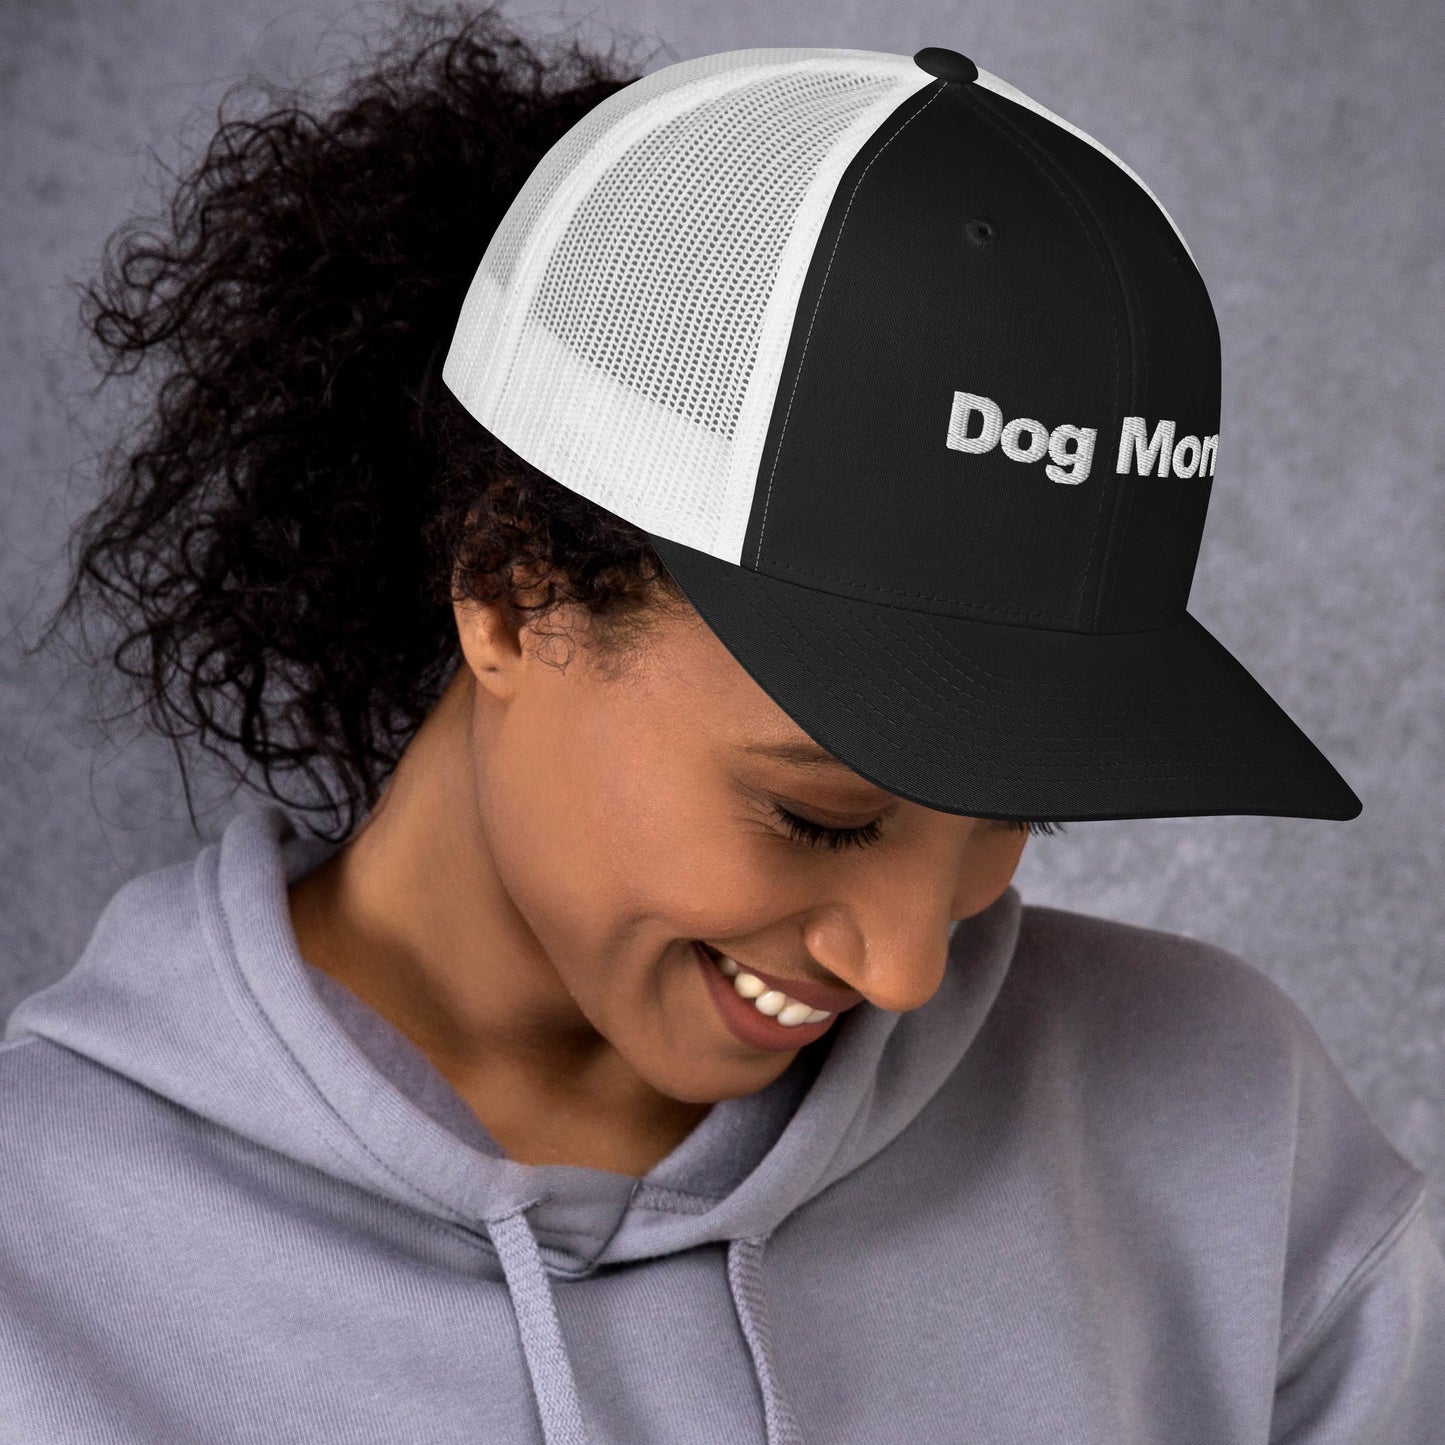 Dog Mom Trucker Cap